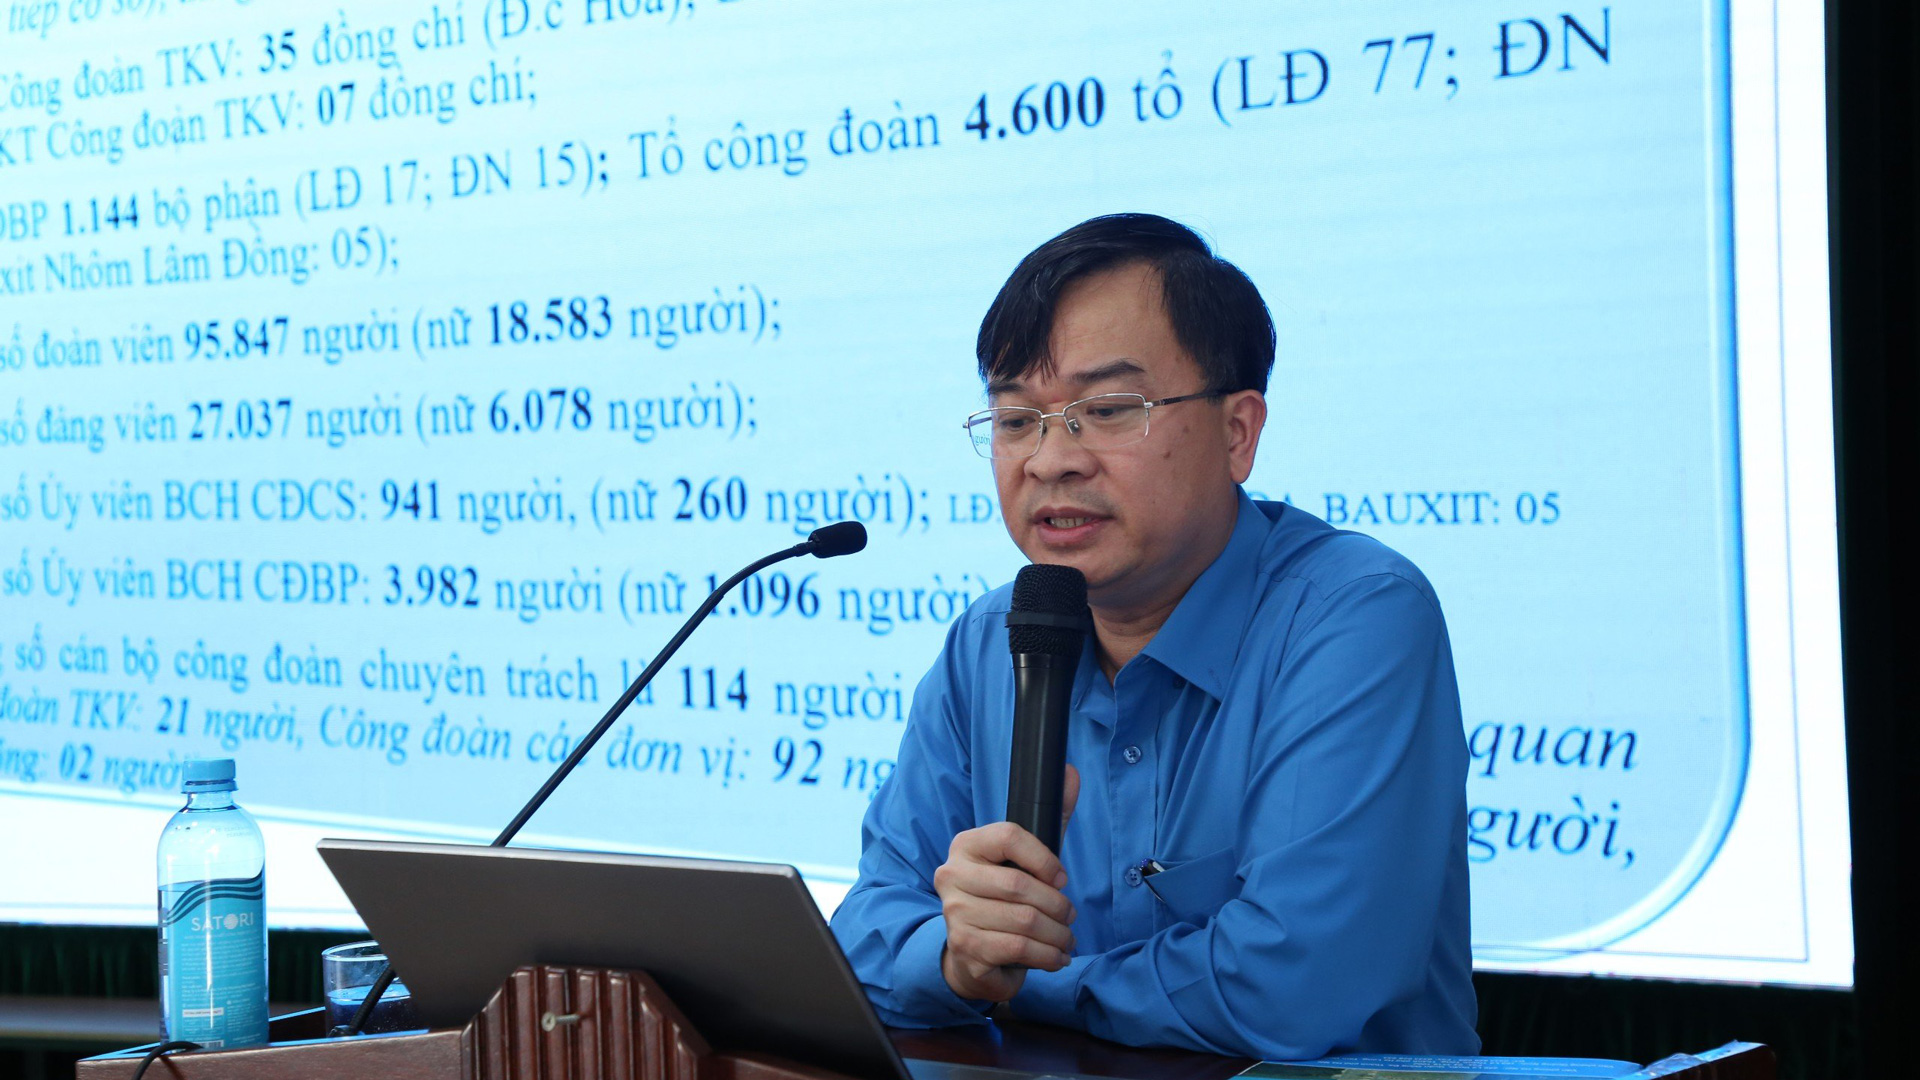 Đồng chí Lưu Thanh Hải - Ủy viên Ban Thường vụ Công đoàn Than khoáng sản Việt Nam trình bày tại buổi tập huấn